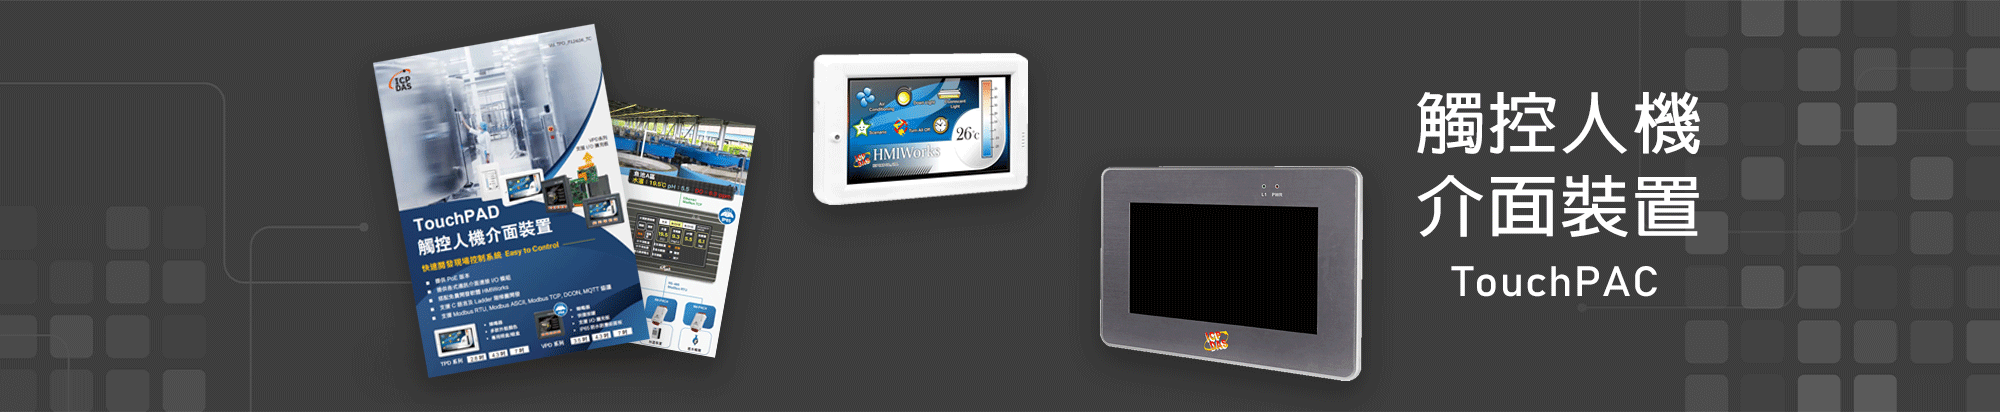 TouchPAD 觸控人機介面裝置